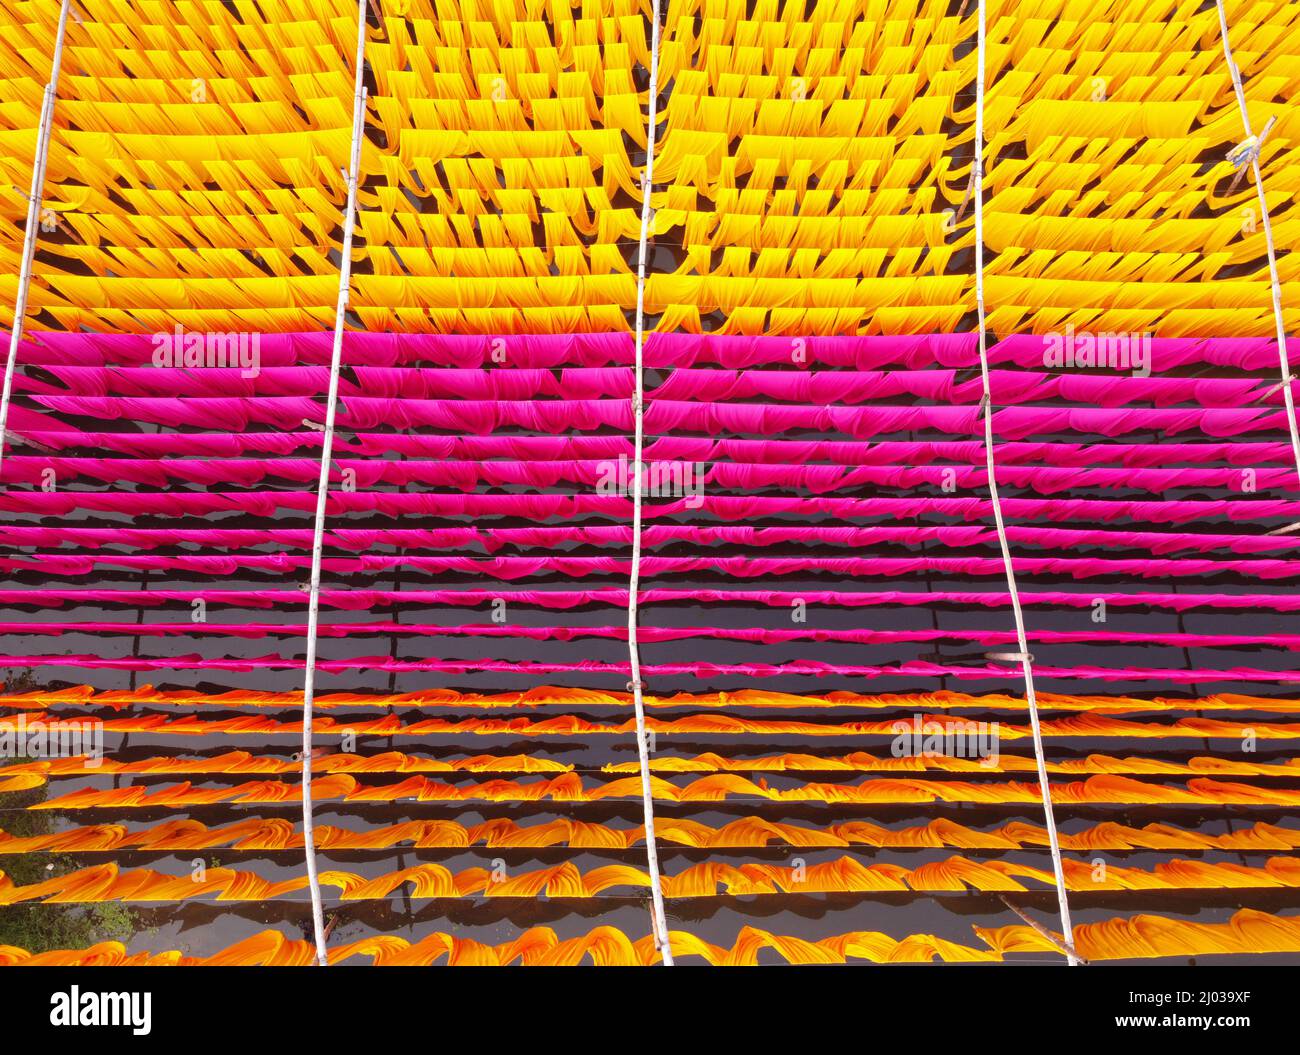 Narayanganj, Dhaka, Bangladesh. 16th mars 2022. Les travailleurs pendent des milliers de différents tissus colorés sur des fils de fer attachés entre un cadre en bambou et les tournent constamment pour qu'ils sèchent parfaitement dans les champs inondés de Narayanganj, au Bangladesh. Des fils de fer sont utilisés entre un cadre de bambou pour créer des lignes de lavage géantes pour la dernière partie du processus de mort que les tissus sont séchés au soleil. Des brins de tissus colorés bleus, roses, orange et verts sont suspendus au-dessus du champ herbacé dans un réseau éblouissant de couleurs entrelacés. C'est la dernière partie du processus de mourir après laquelle le tissu est Banque D'Images